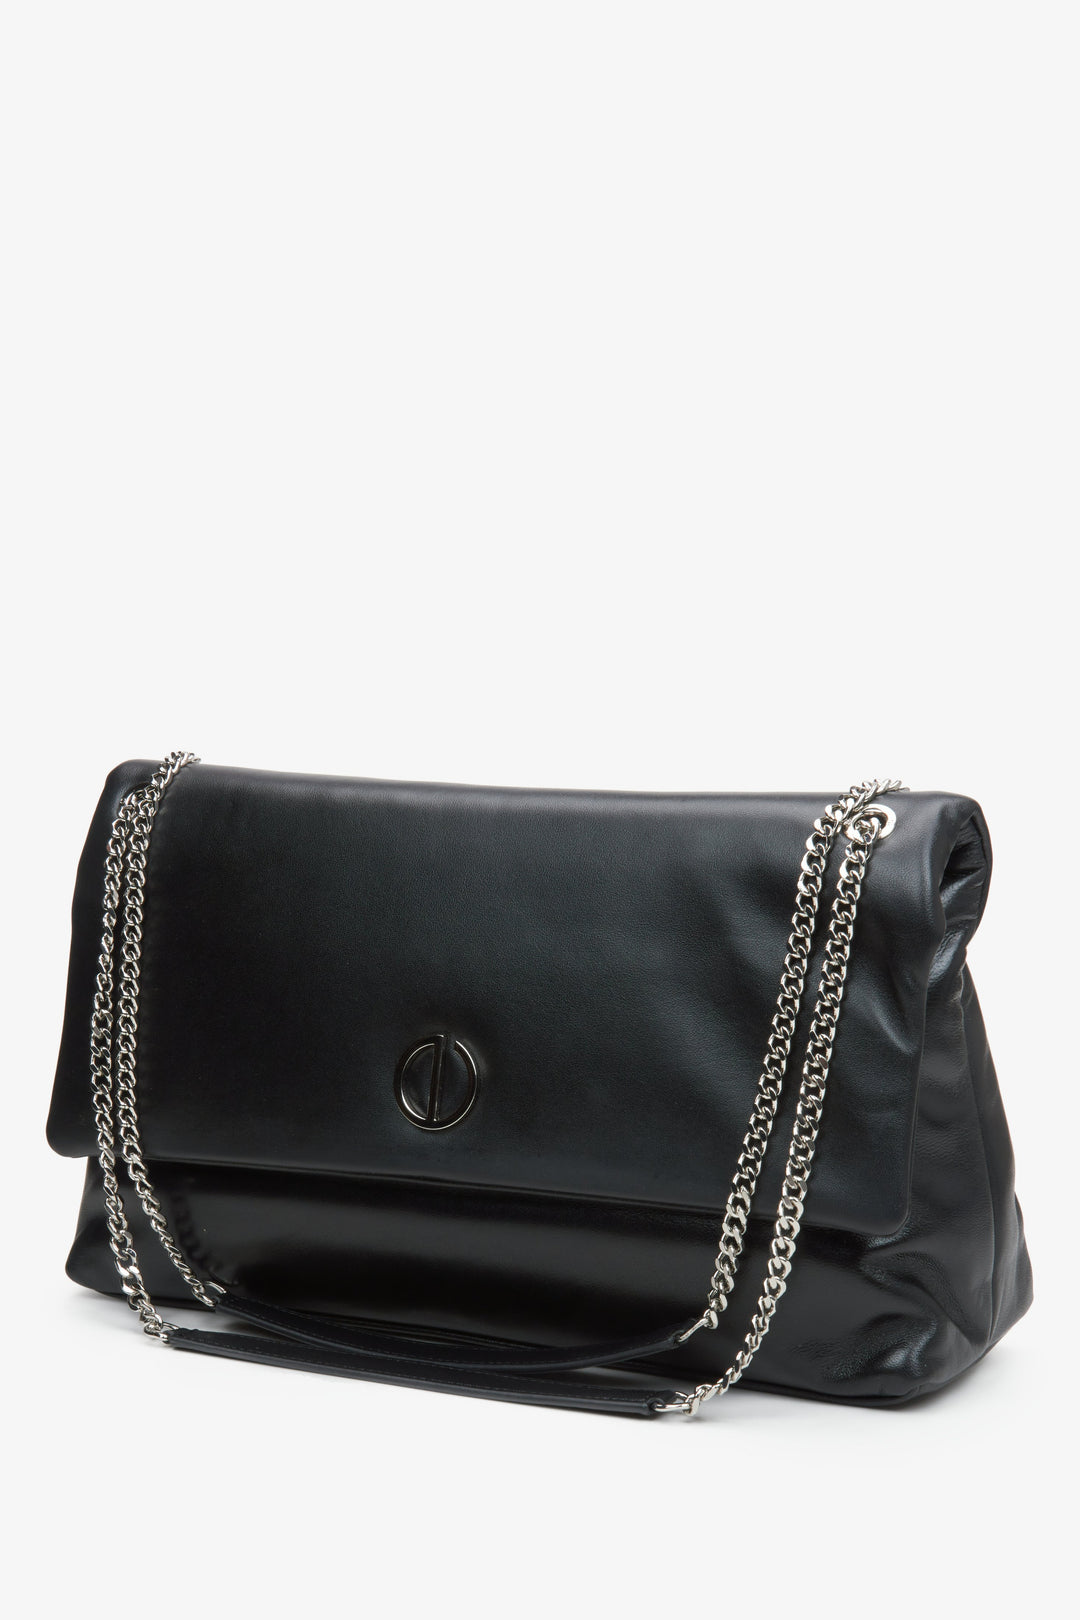 Women's black handbag with a chain strap Estro.